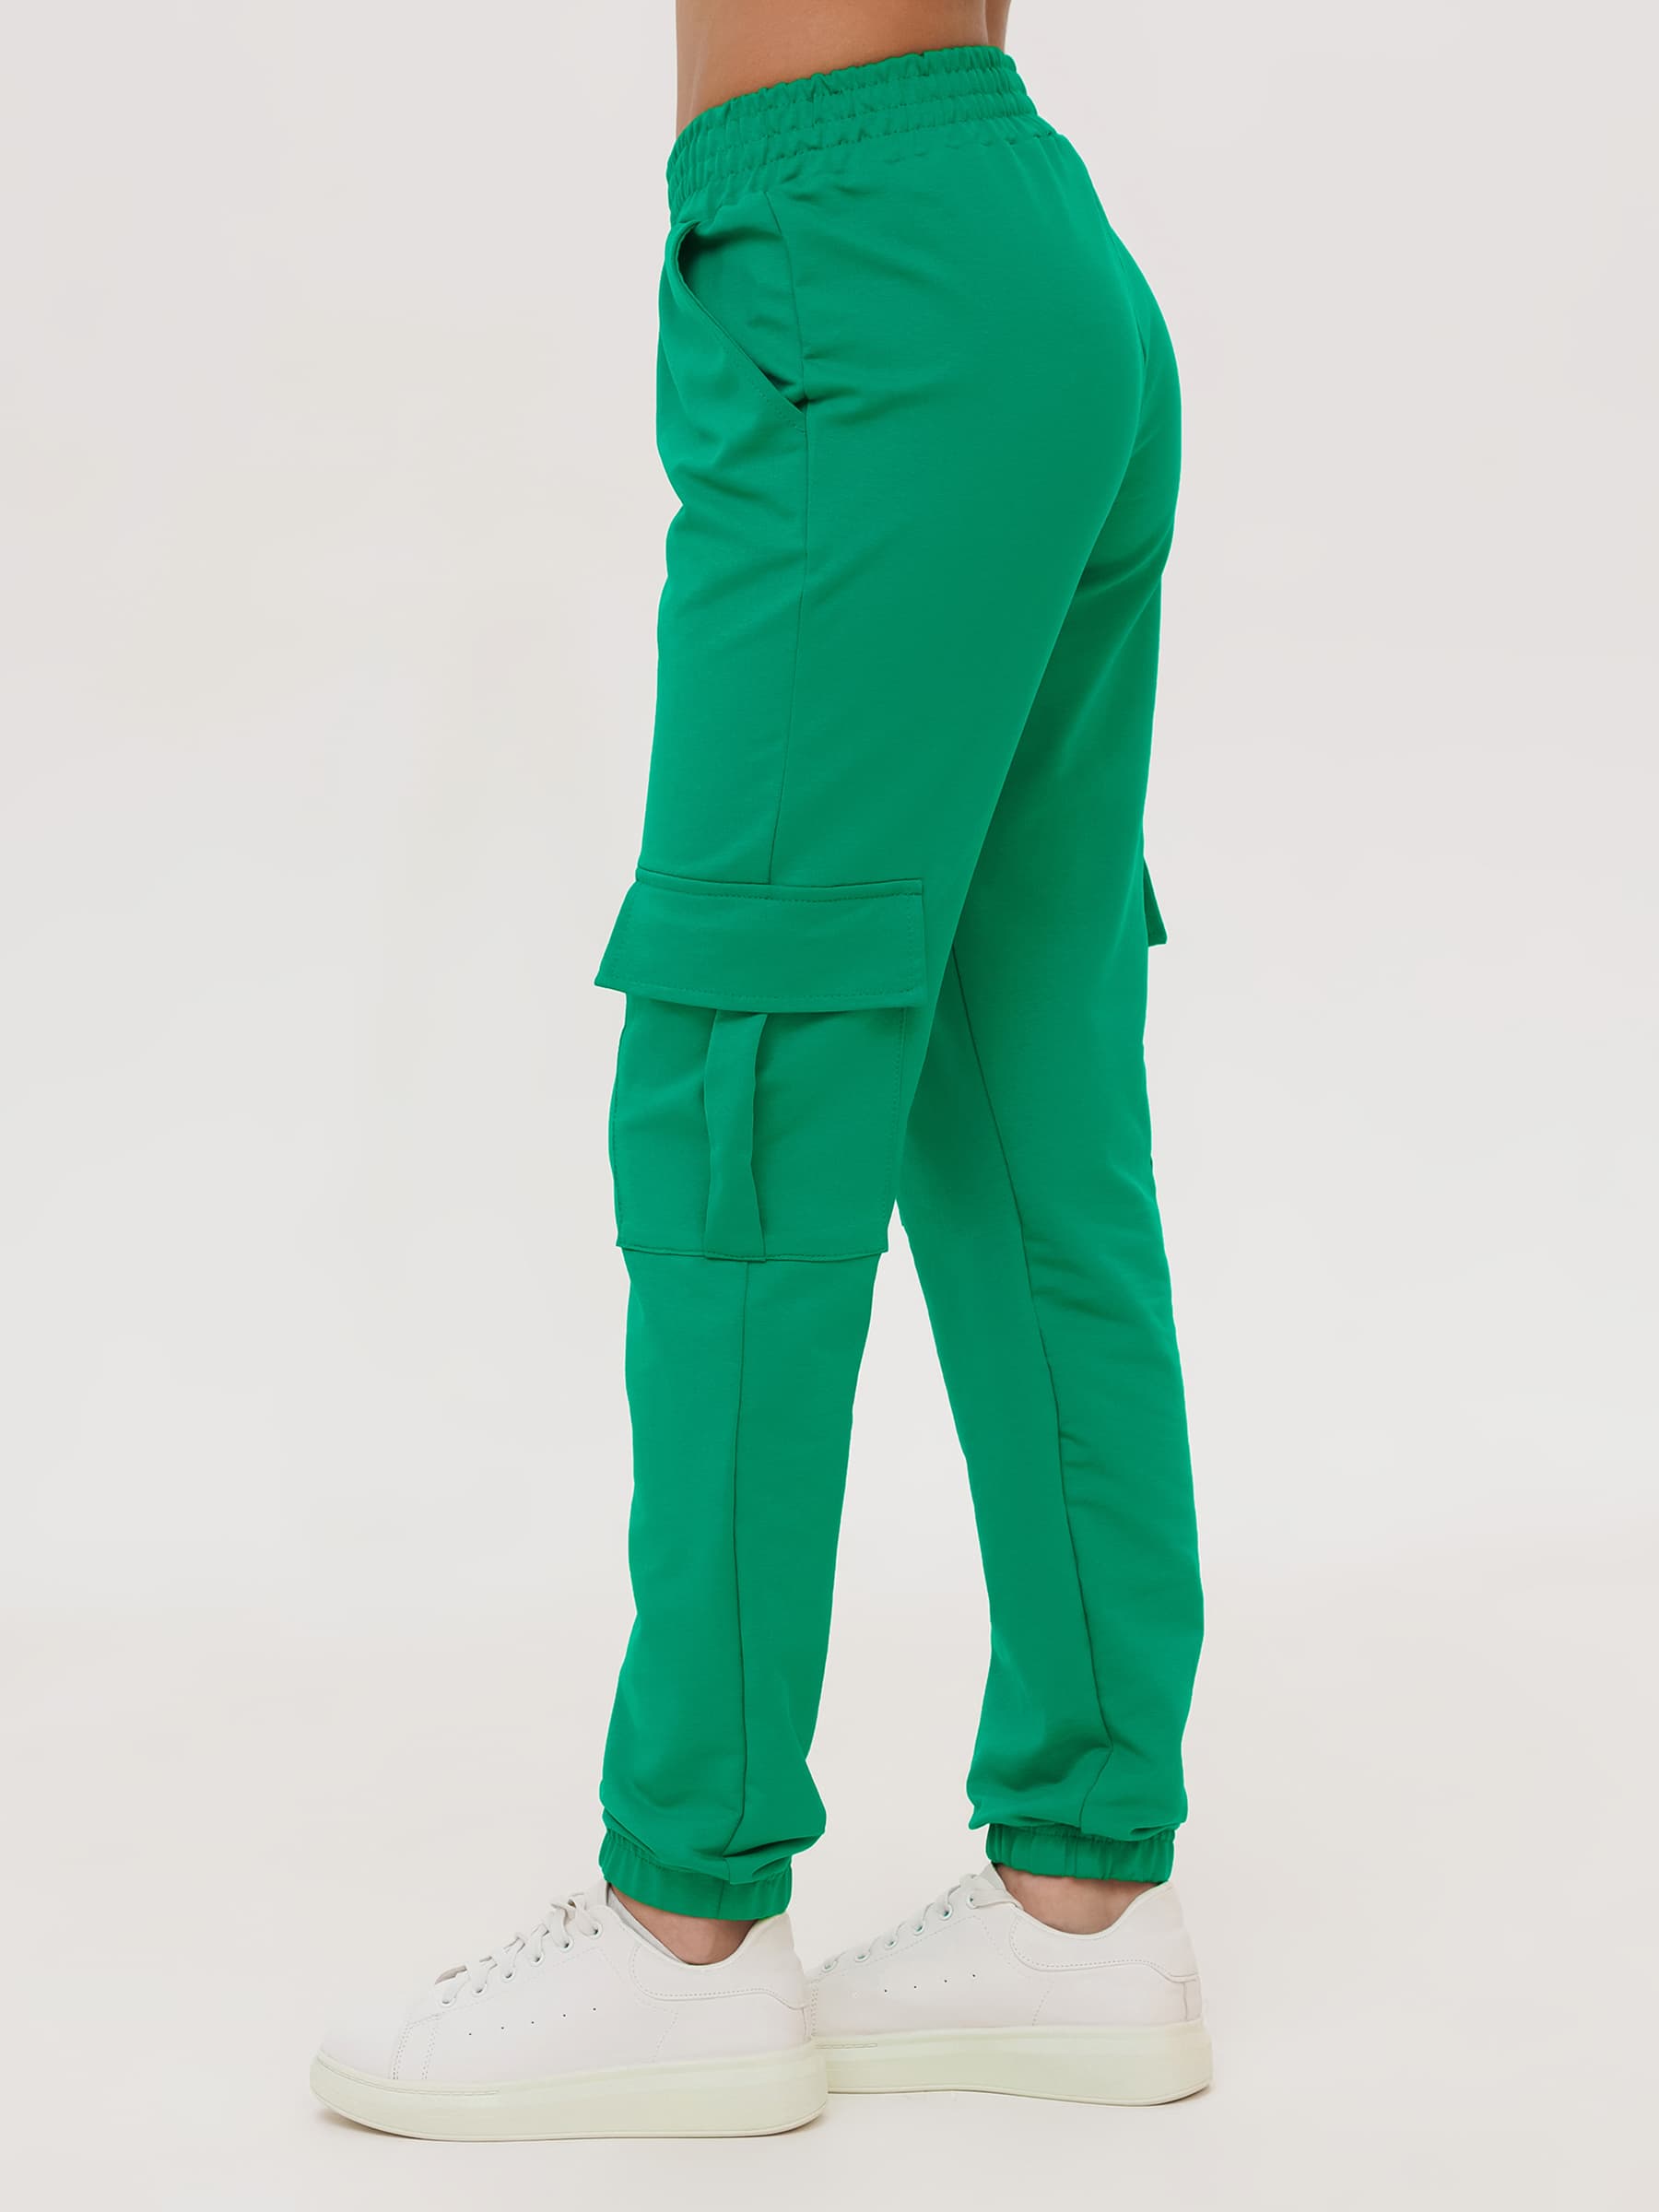 Жен. брюки повседневные арт. 23-0524 Зеленый р. 50 Моделлини, размер 50 - фото 9